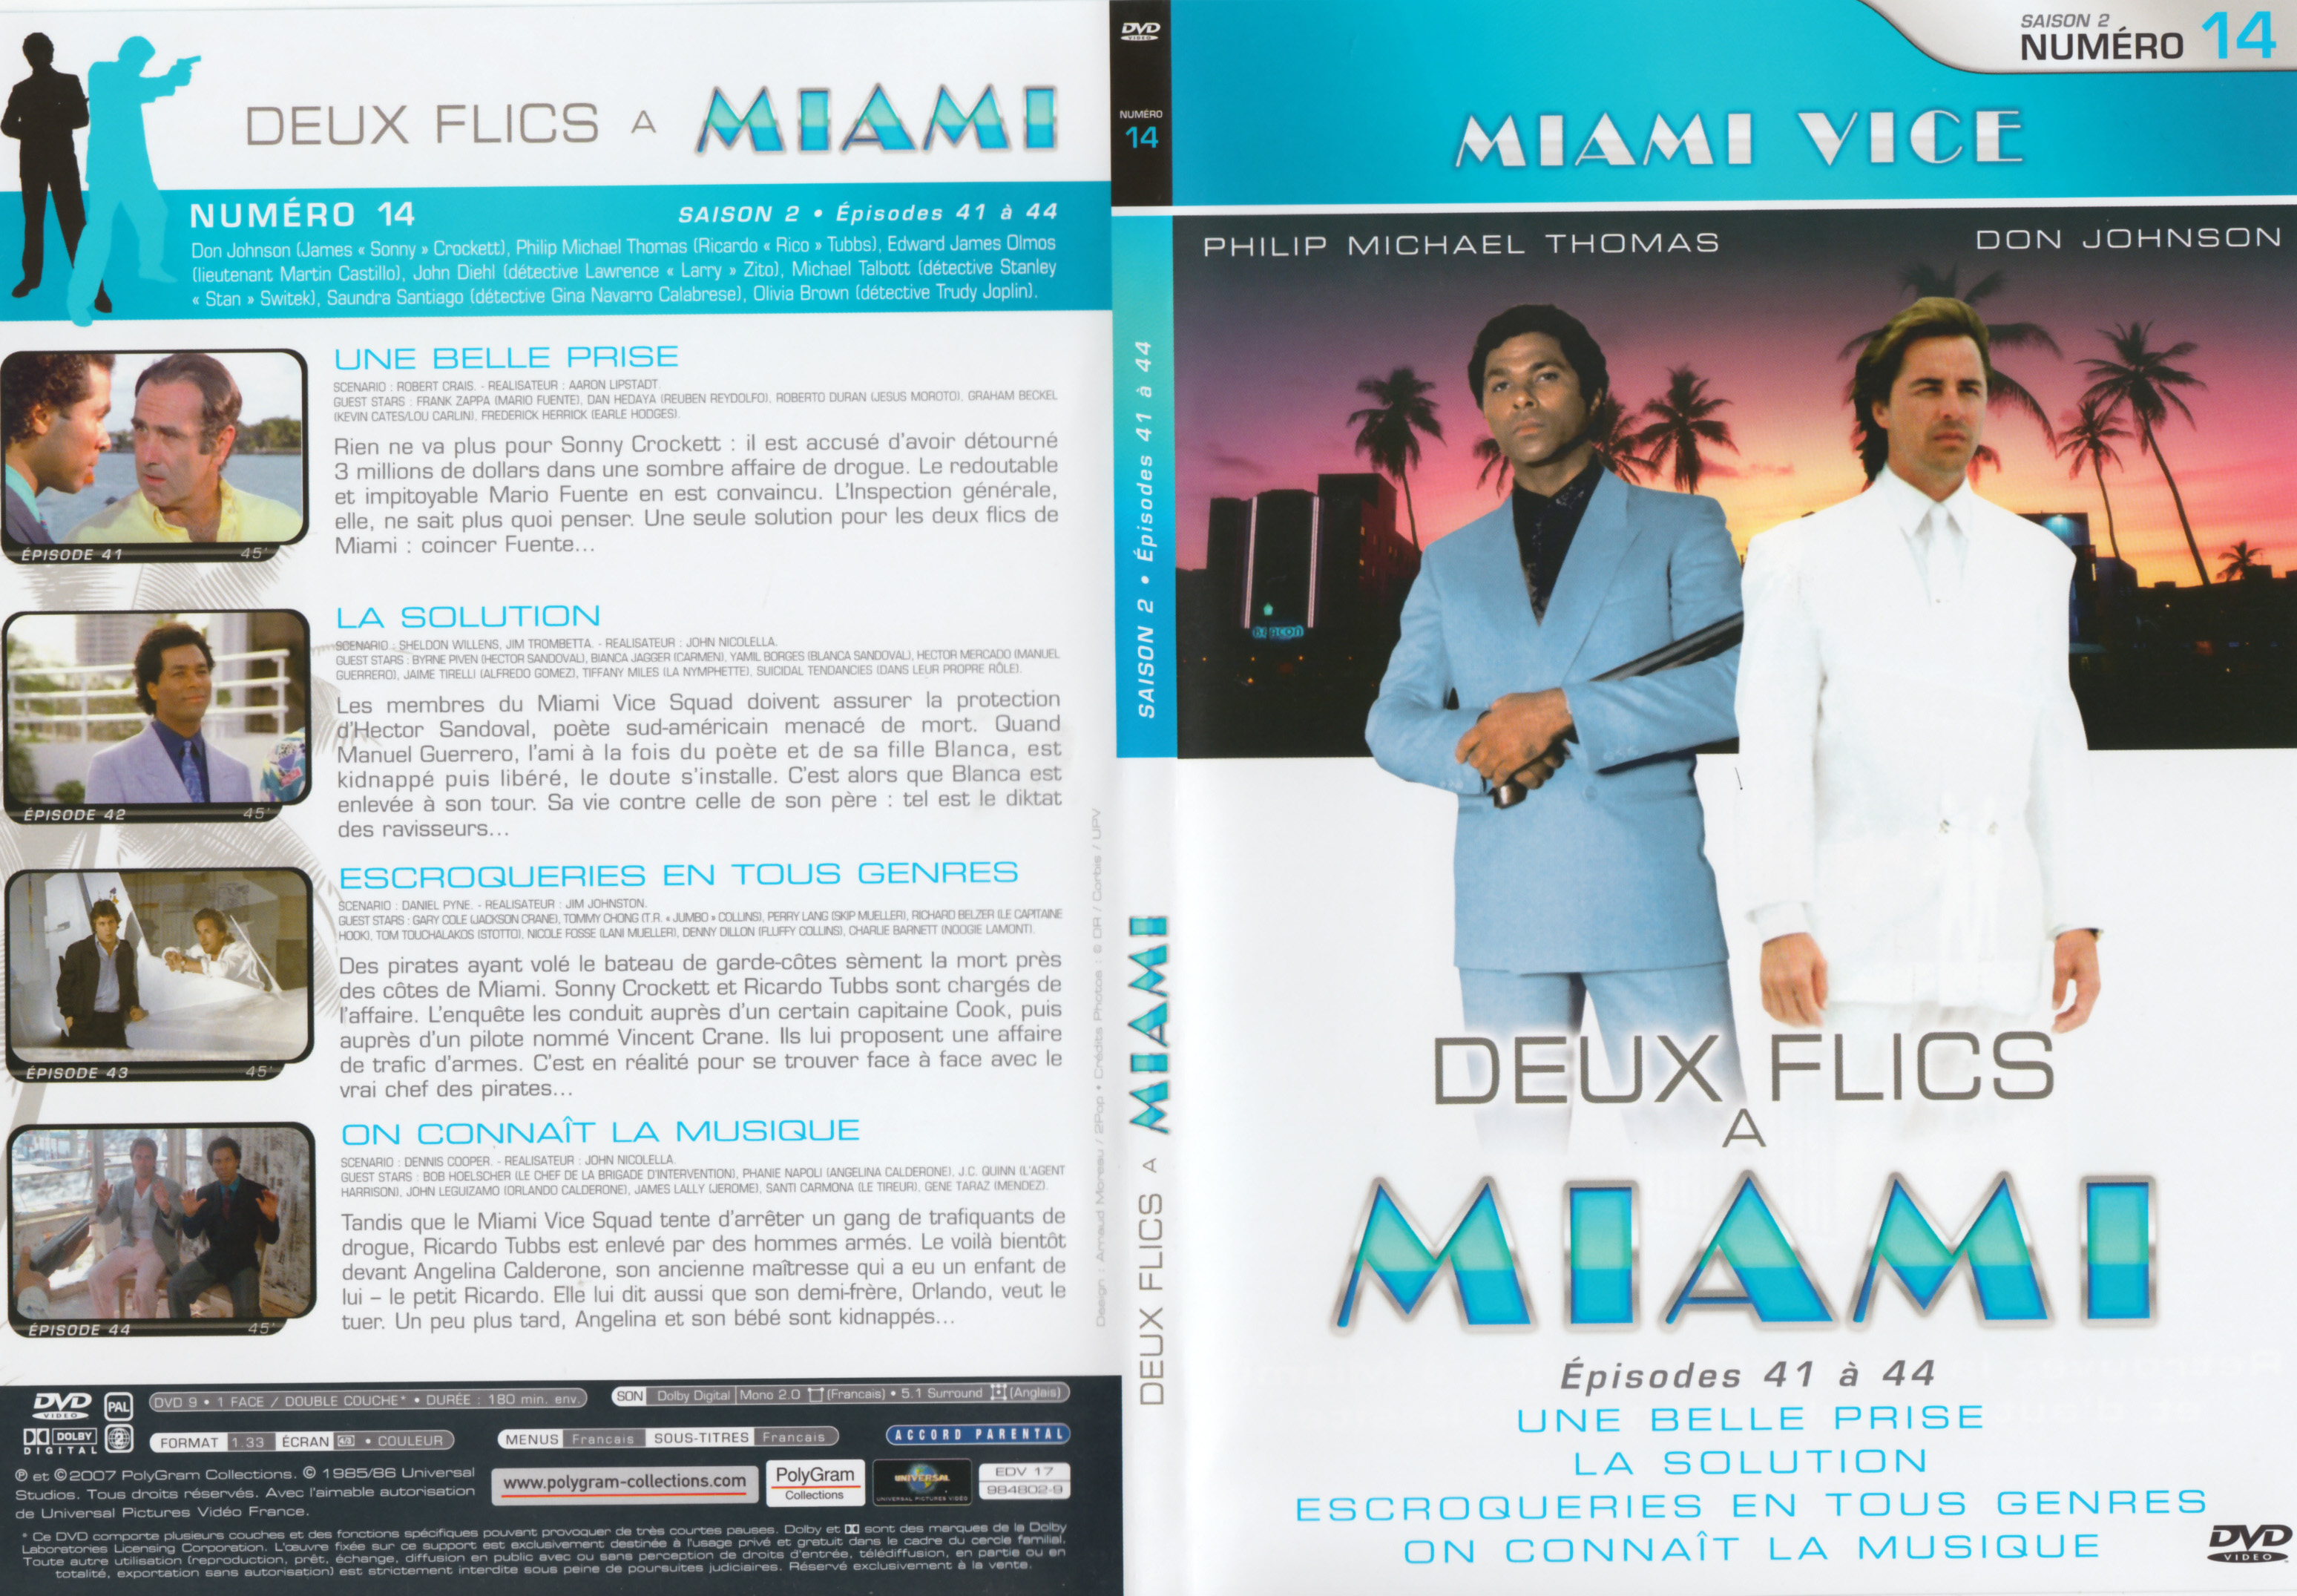 Jaquette DVD Deux flics  Miami Saison 2 vol 14